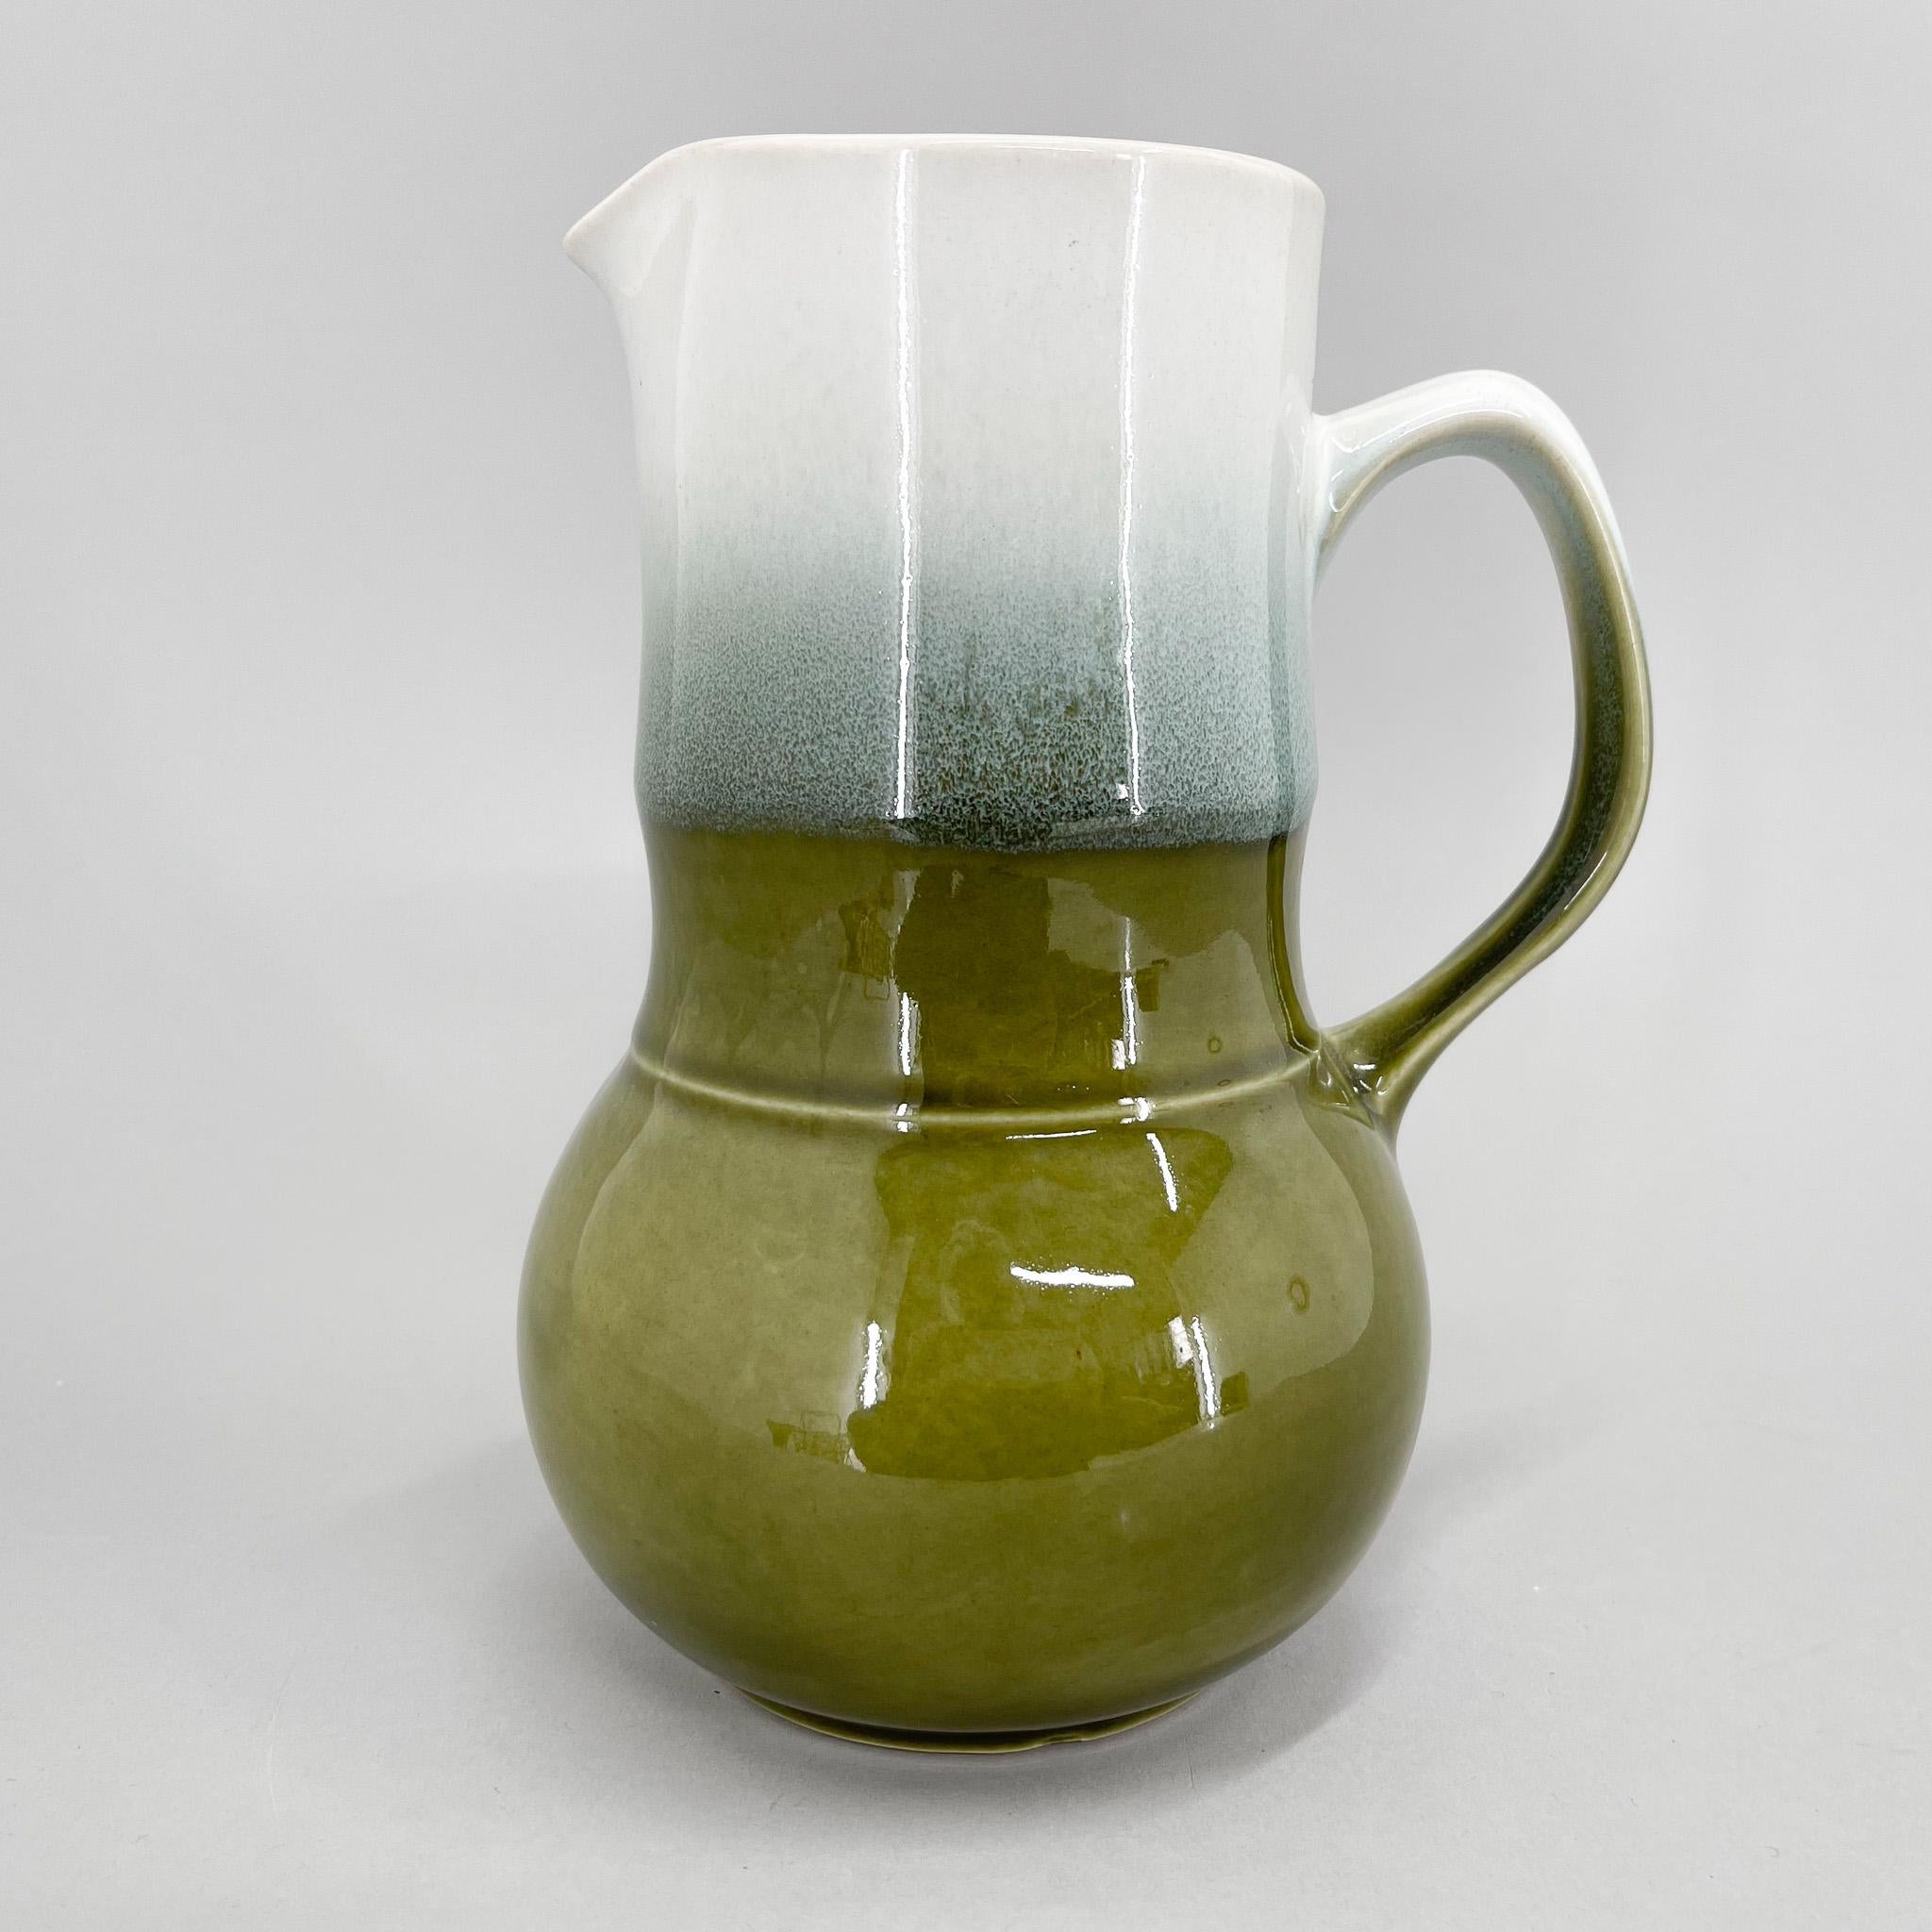 Glasierter Keramikkrug in grüner und weißer Farbe, hergestellt von Ditmar Urbach in der ehemaligen Tschechoslowakei in den 1970er Jahren.